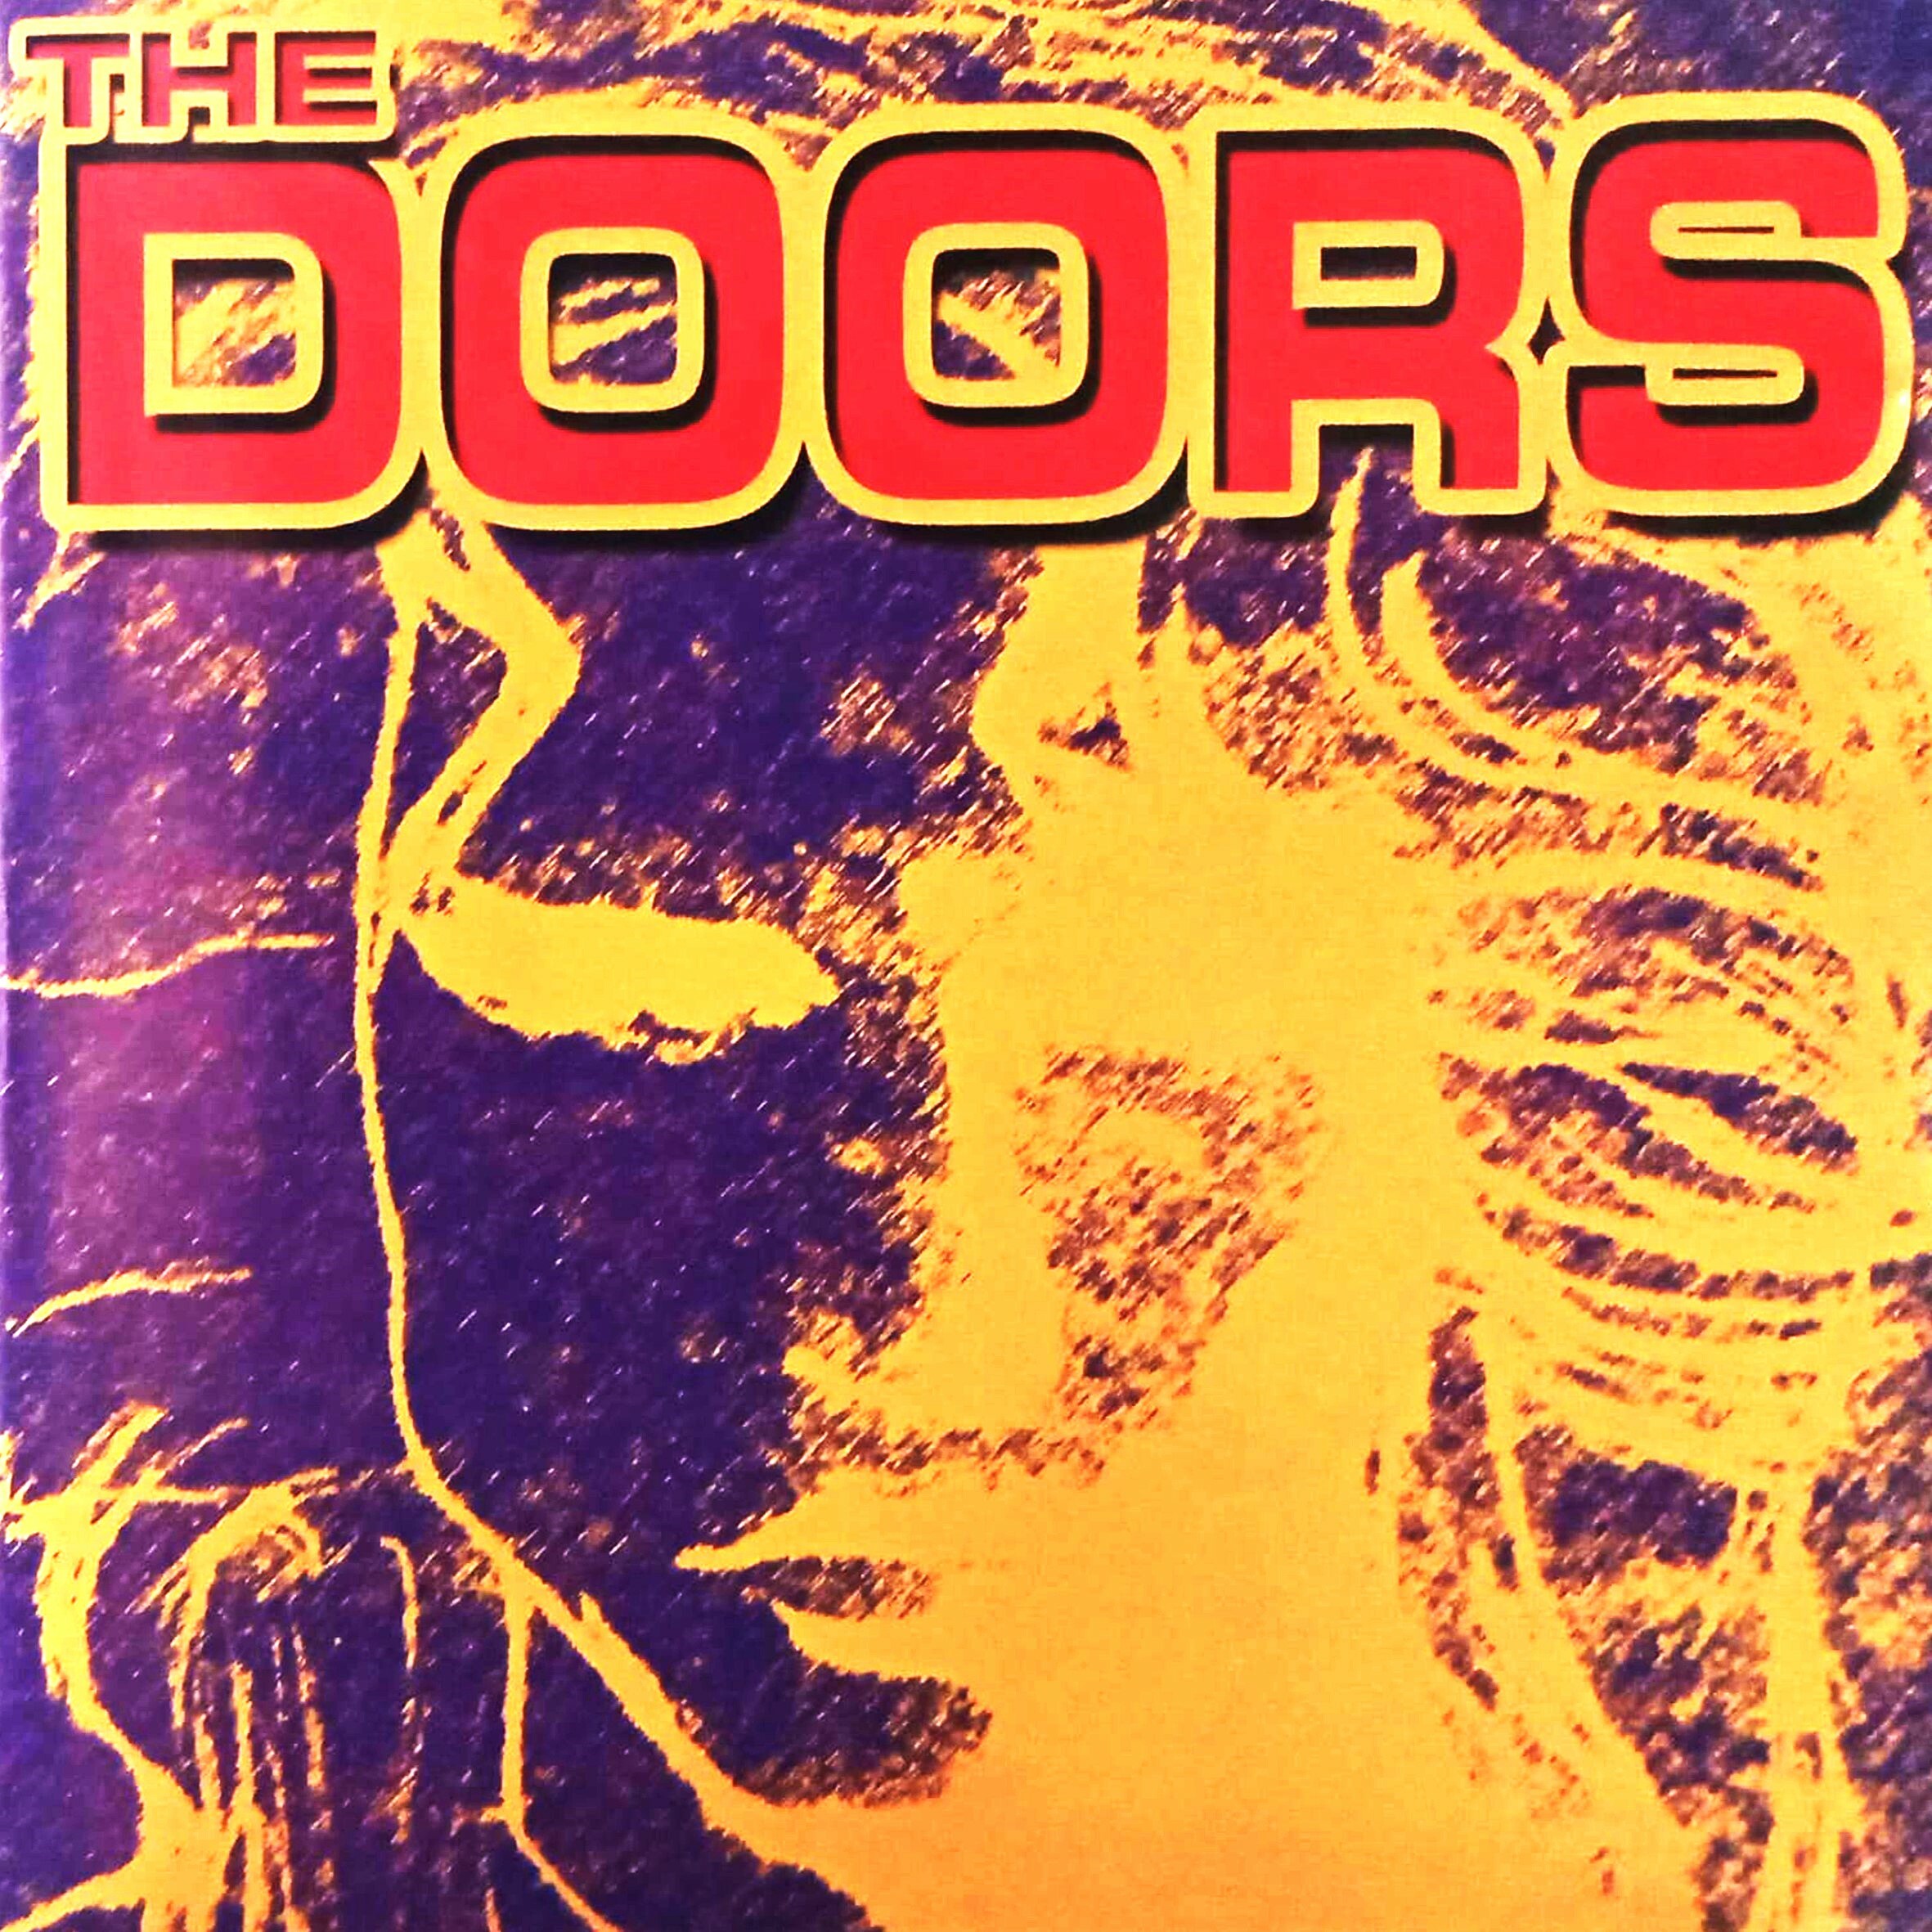 CD - Doors The - The Doors